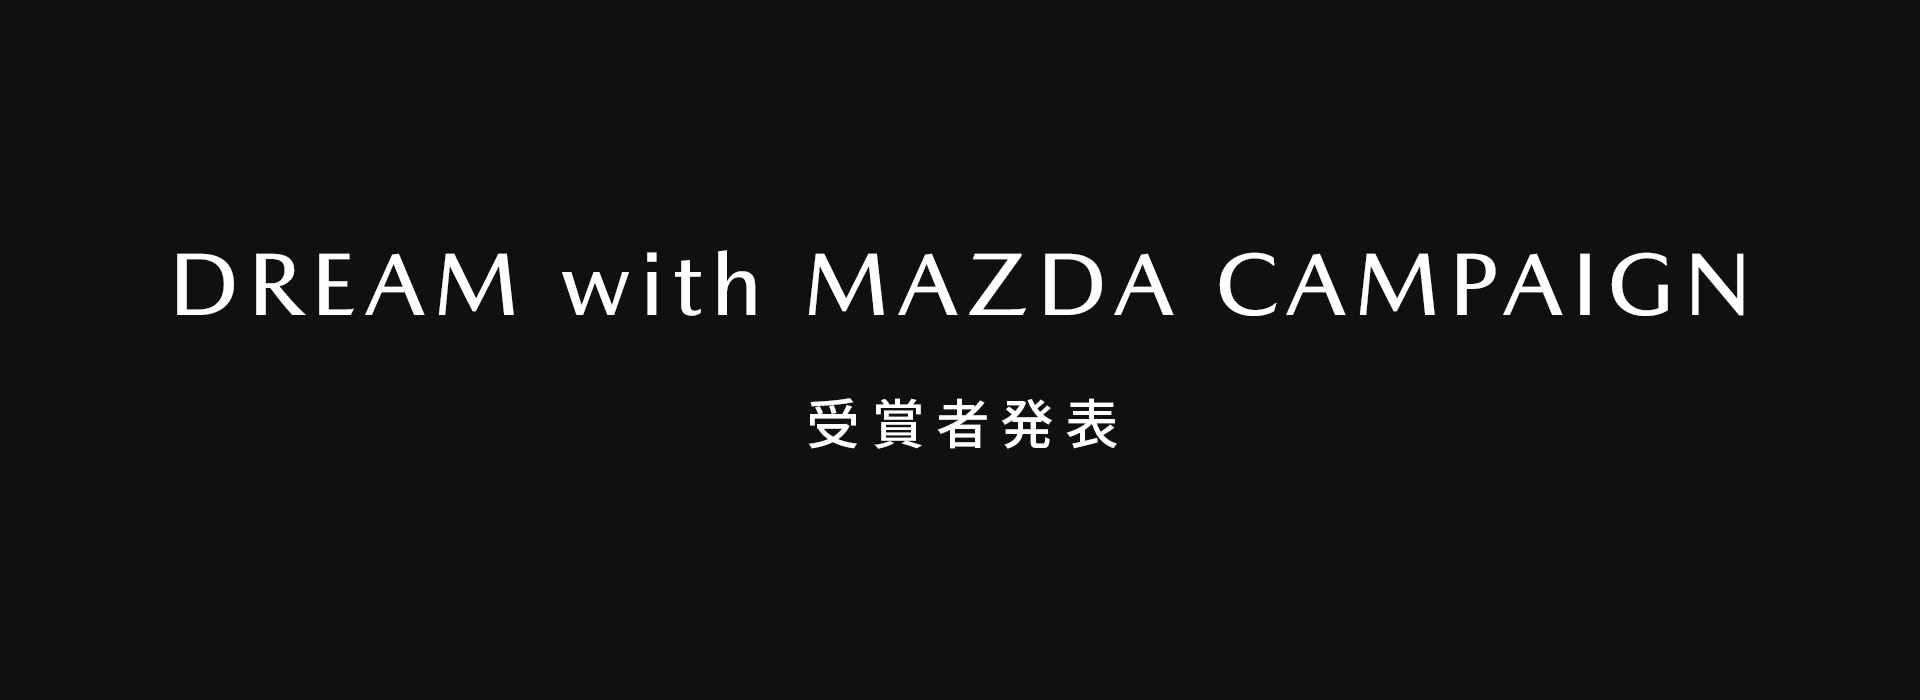 DREAM with MAZDA CAMPAIGN - 受賞者発表 -